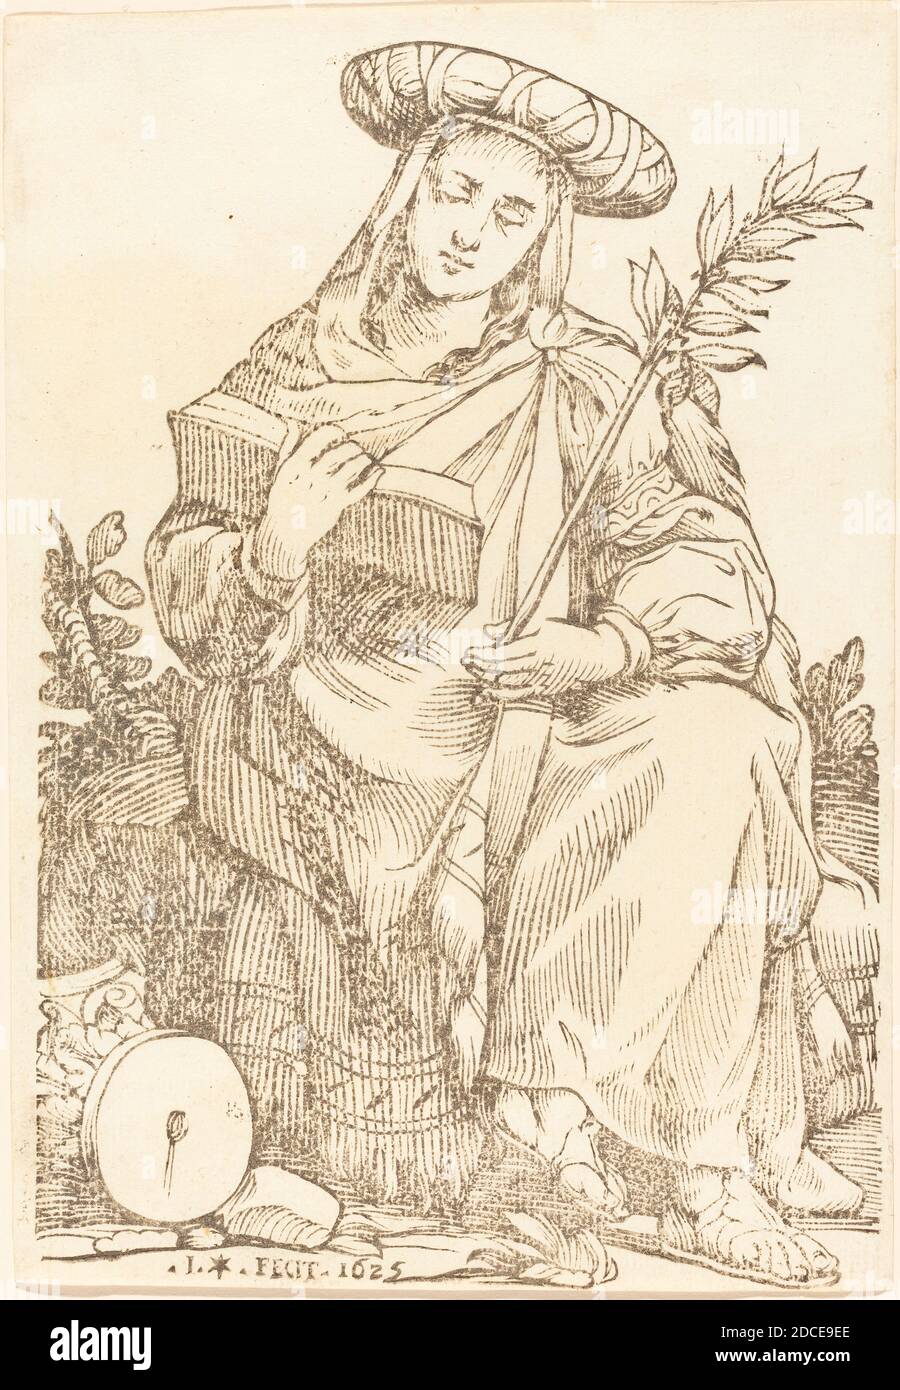 Jacques Stella, (artiste), Français, 1596 - 1657, Sibylla Libyca, série de Sibyls, (série), 1625, coupe de bois Banque D'Images